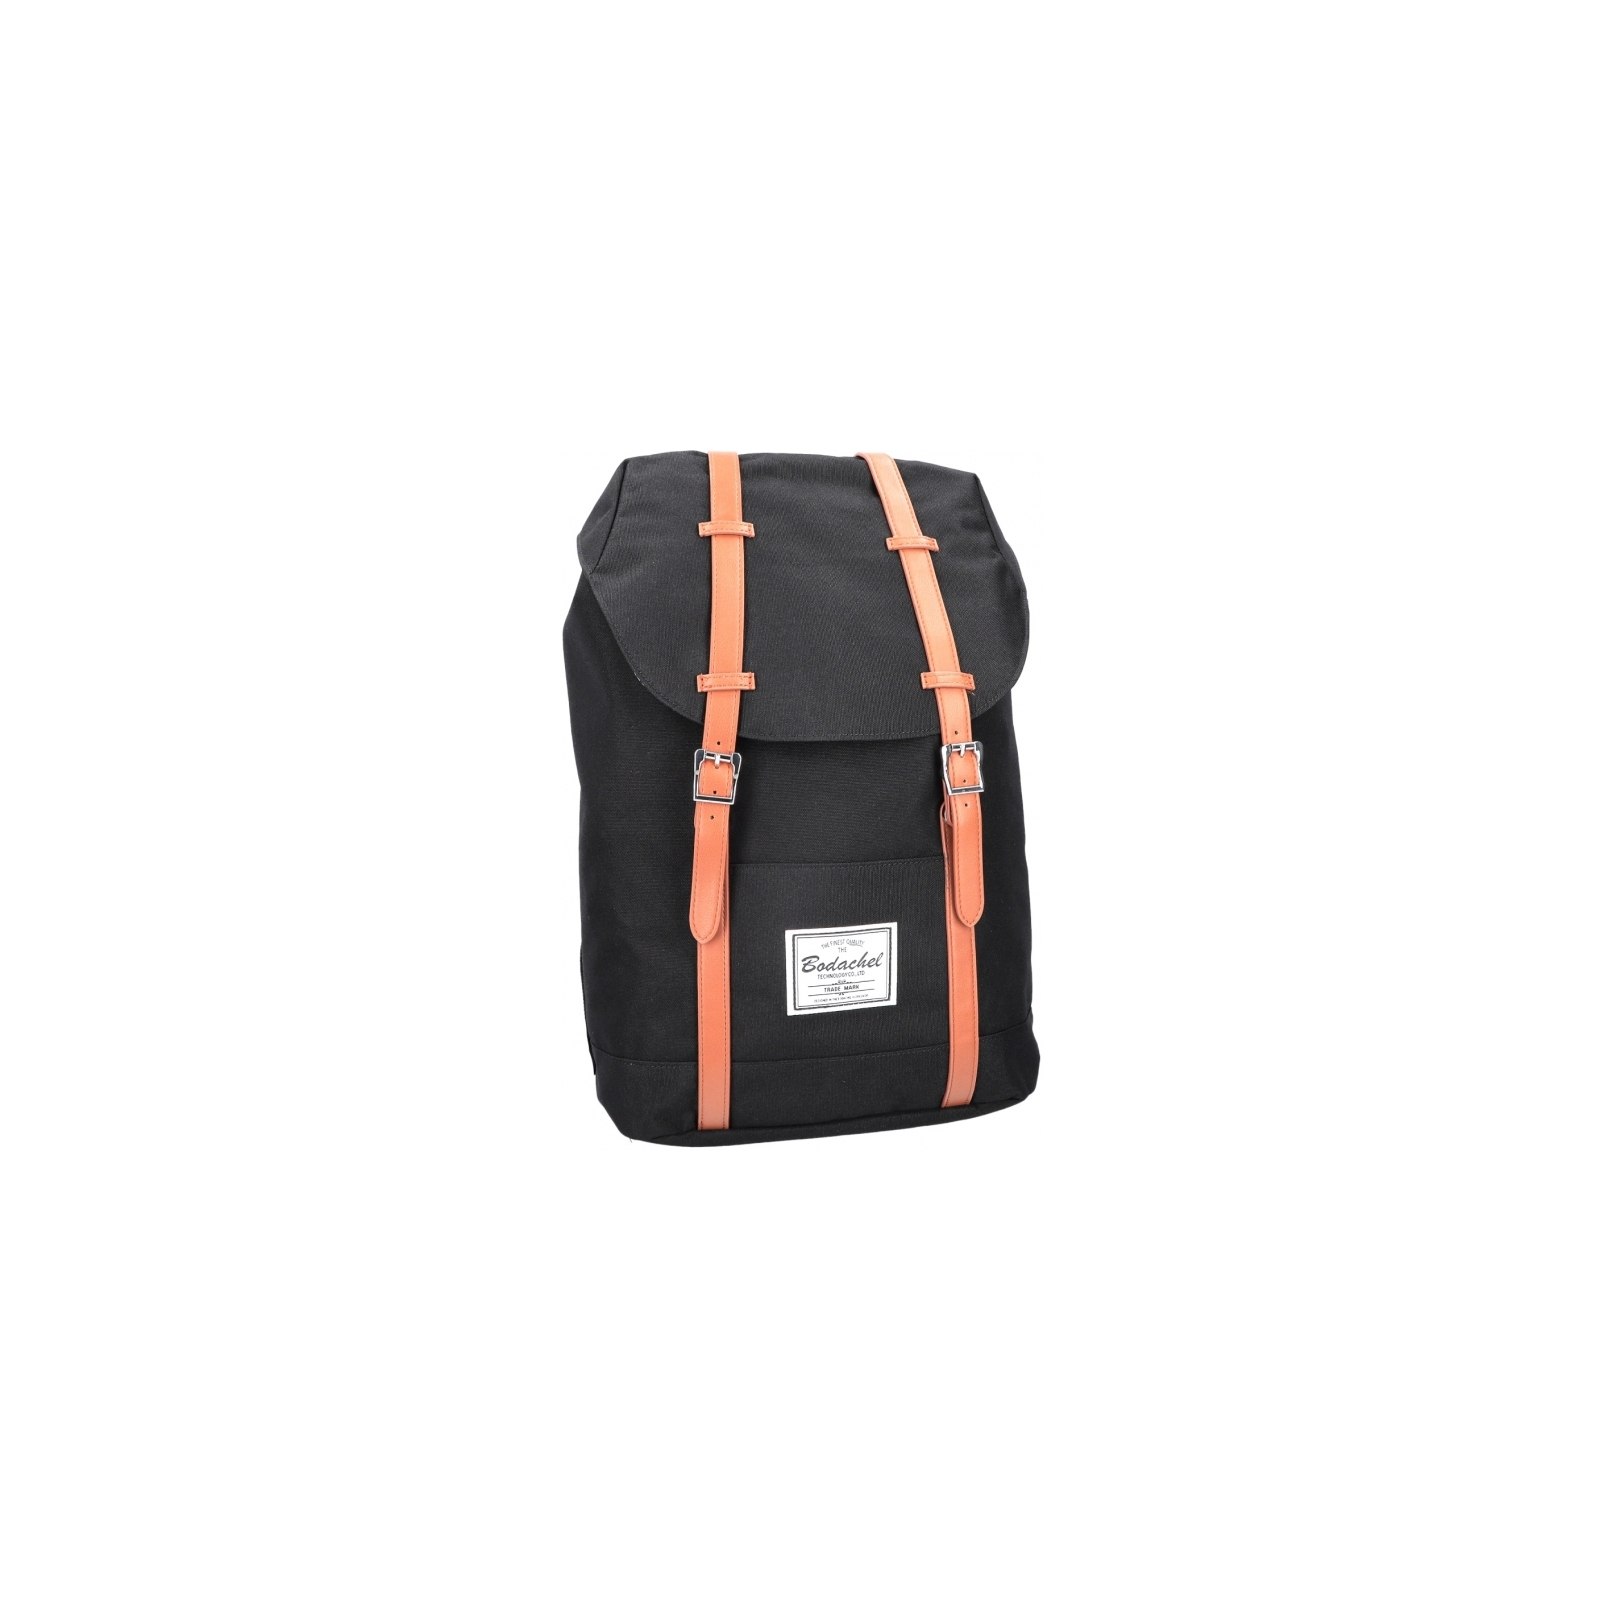 Рюкзак школьный Bodachel 46*16*30 см Черный (BS09-01)